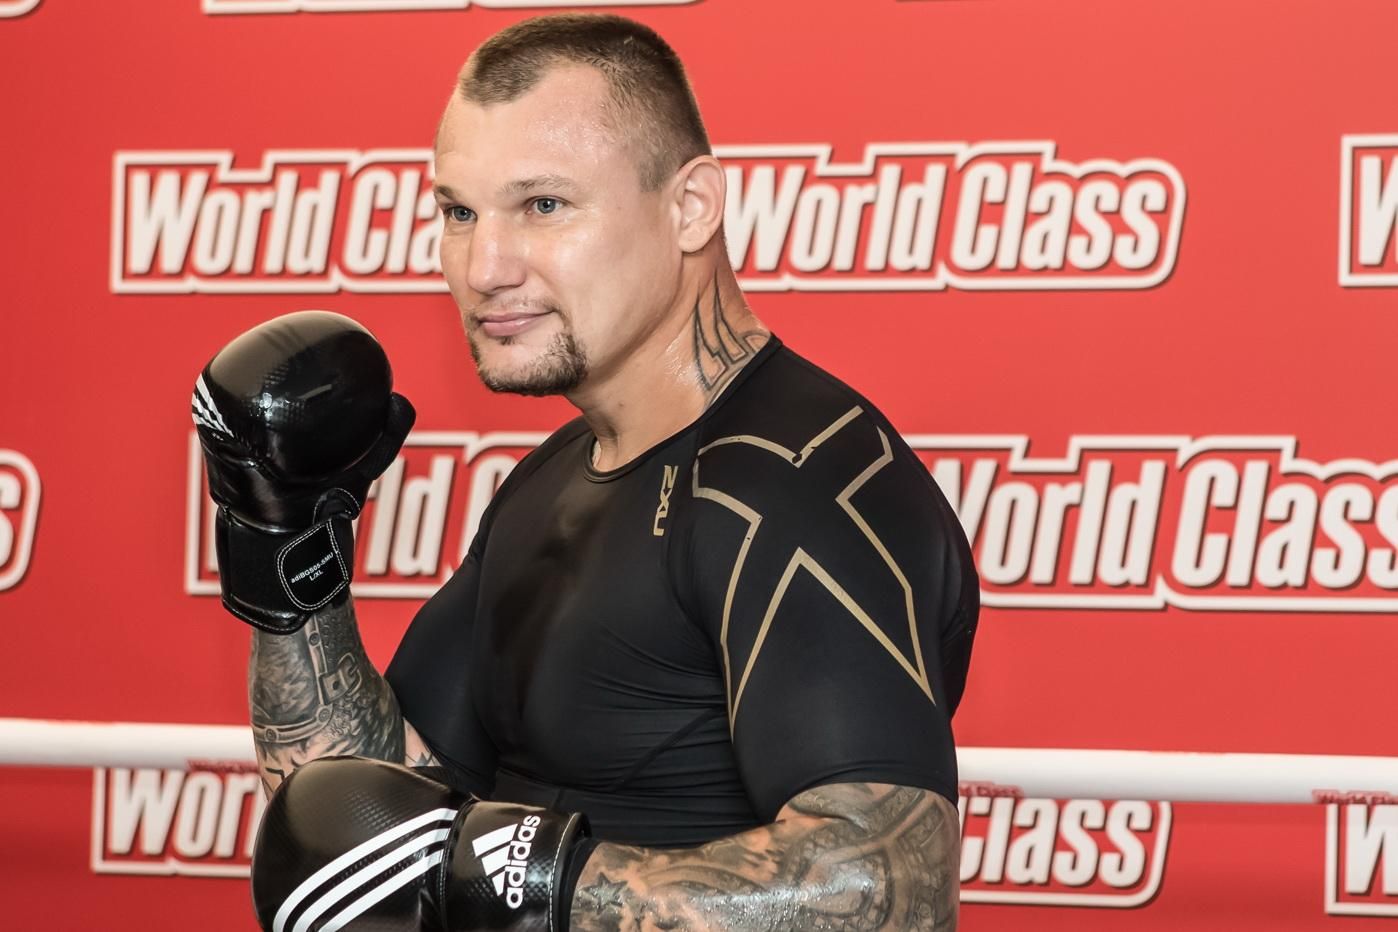 Українець Руденко проведе бій з екссуперником Усика за пояс IBF Intercontinental - новини боксу - Спорт 24